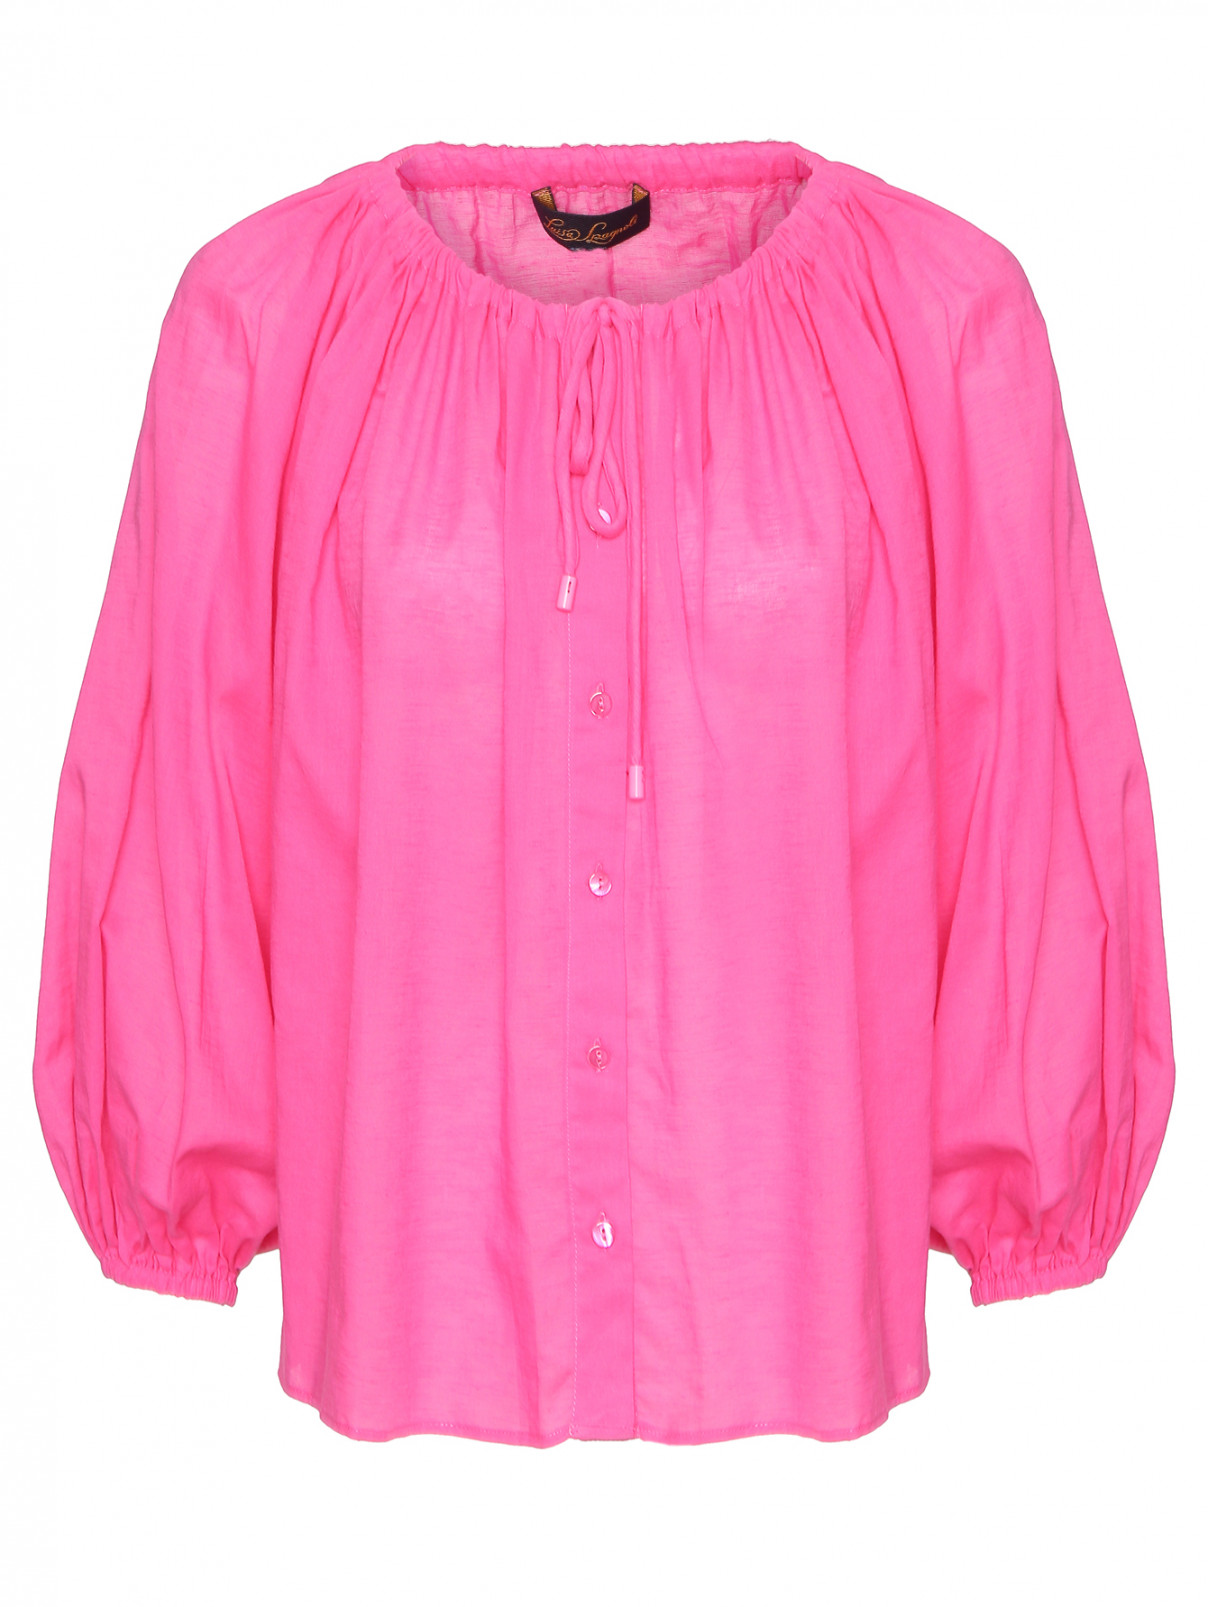 Блуза из хлопка и льна универсального размера Luisa Spagnoli  –  Общий вид  – Цвет:  Розовый